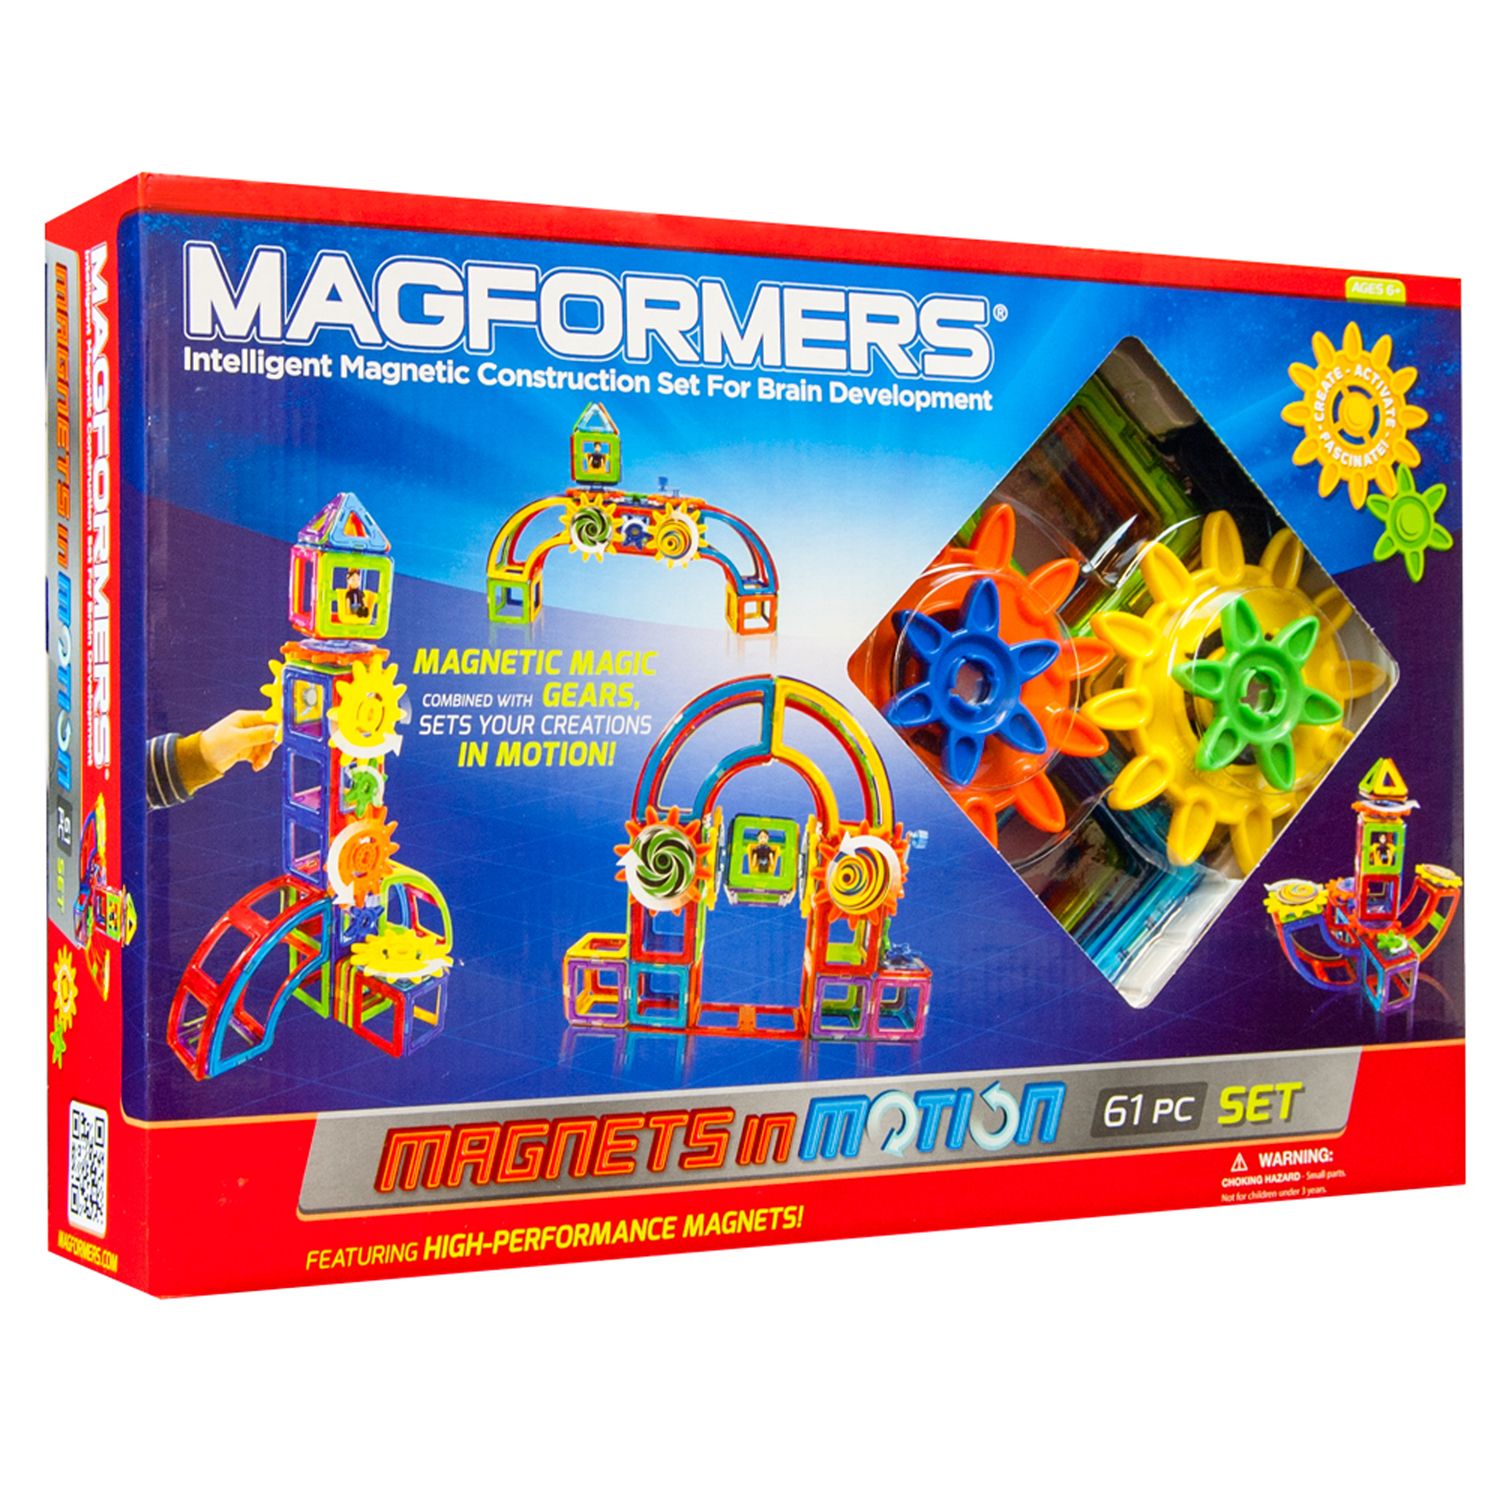 magformer sets